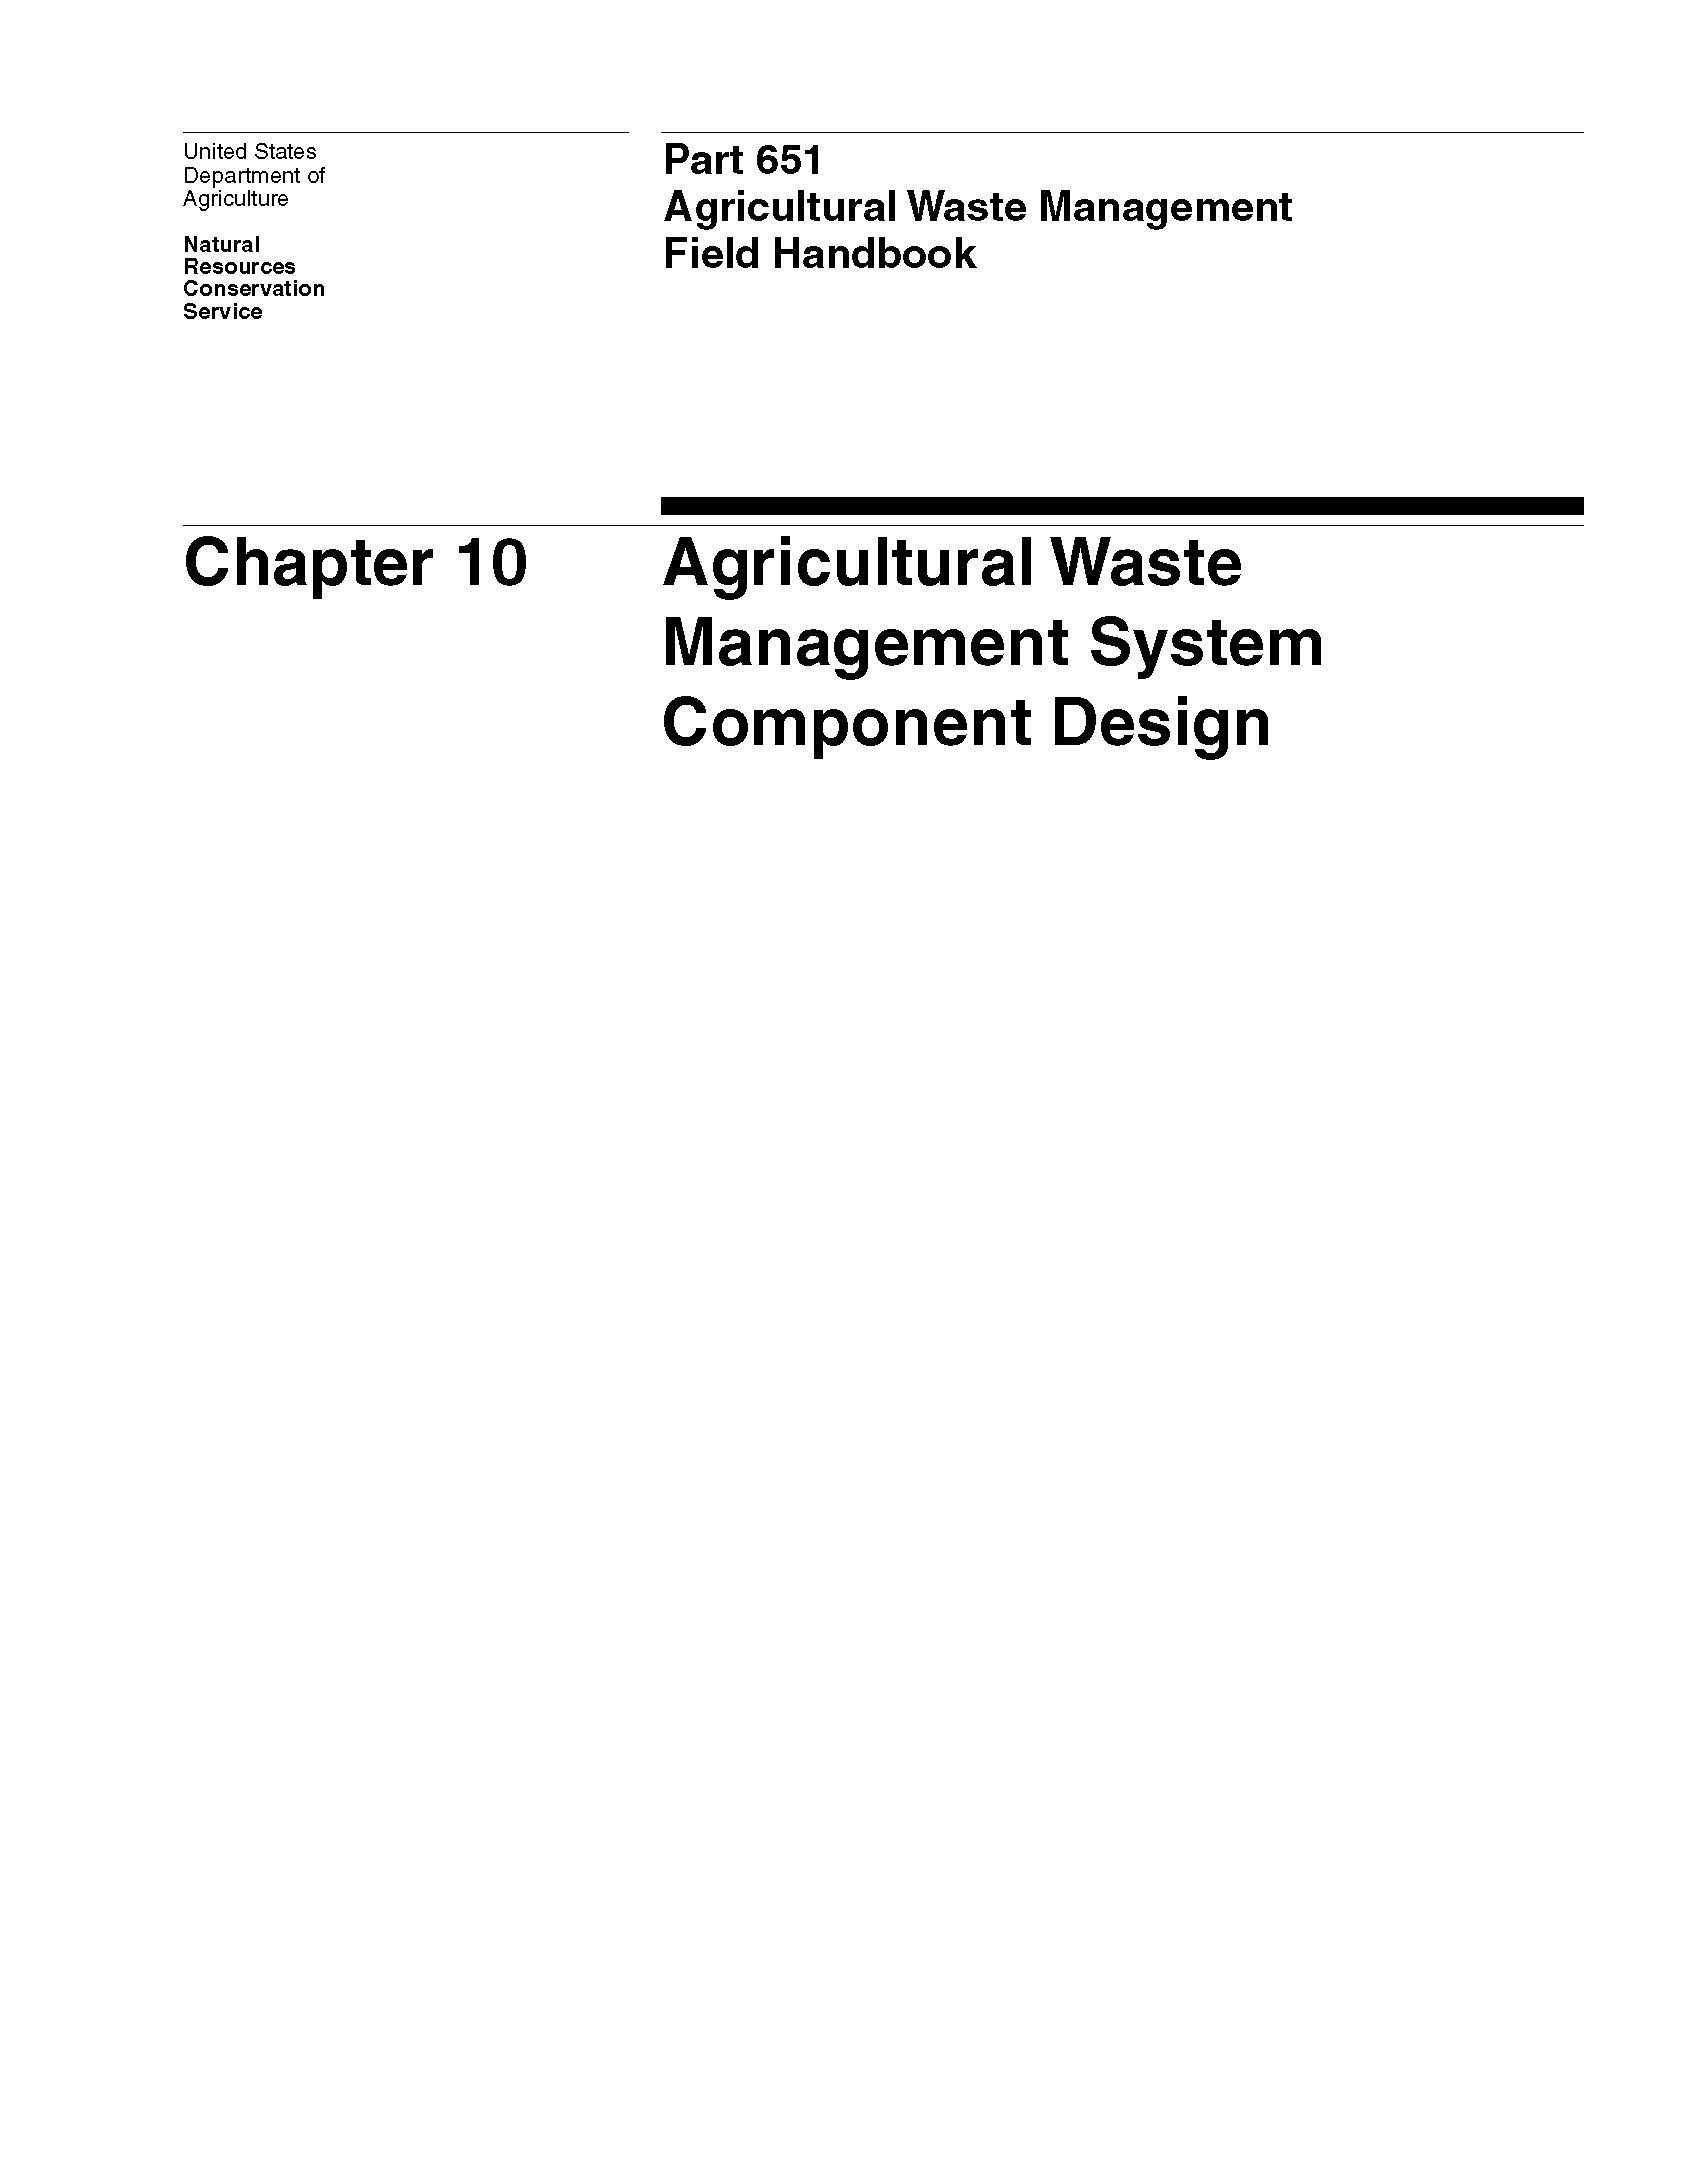 NEH-651-10 Agricultural Waste Management System Component Design